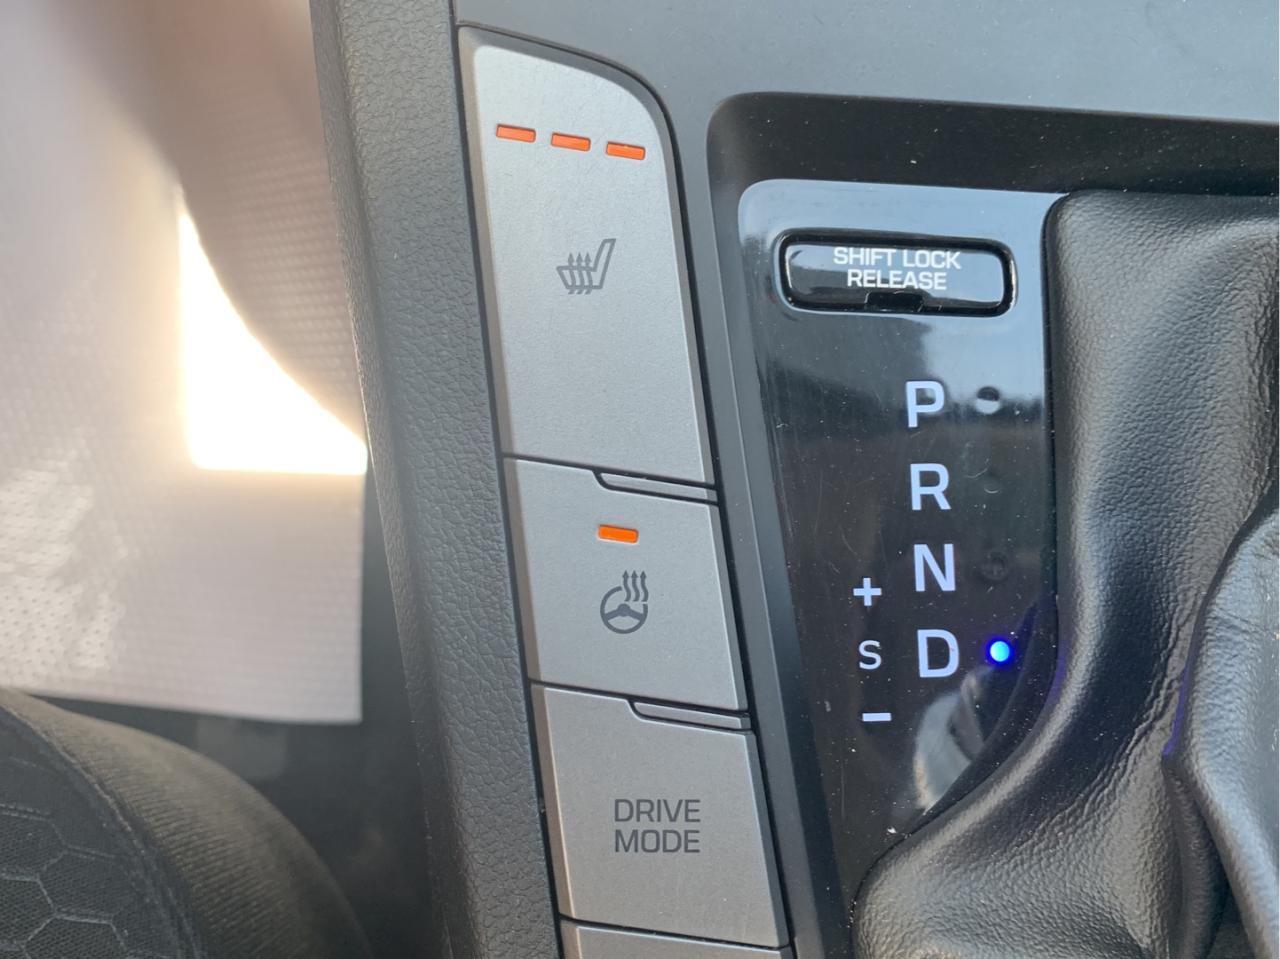 2019 Hyundai Elantra, 159486 km, Sedan, Toronto